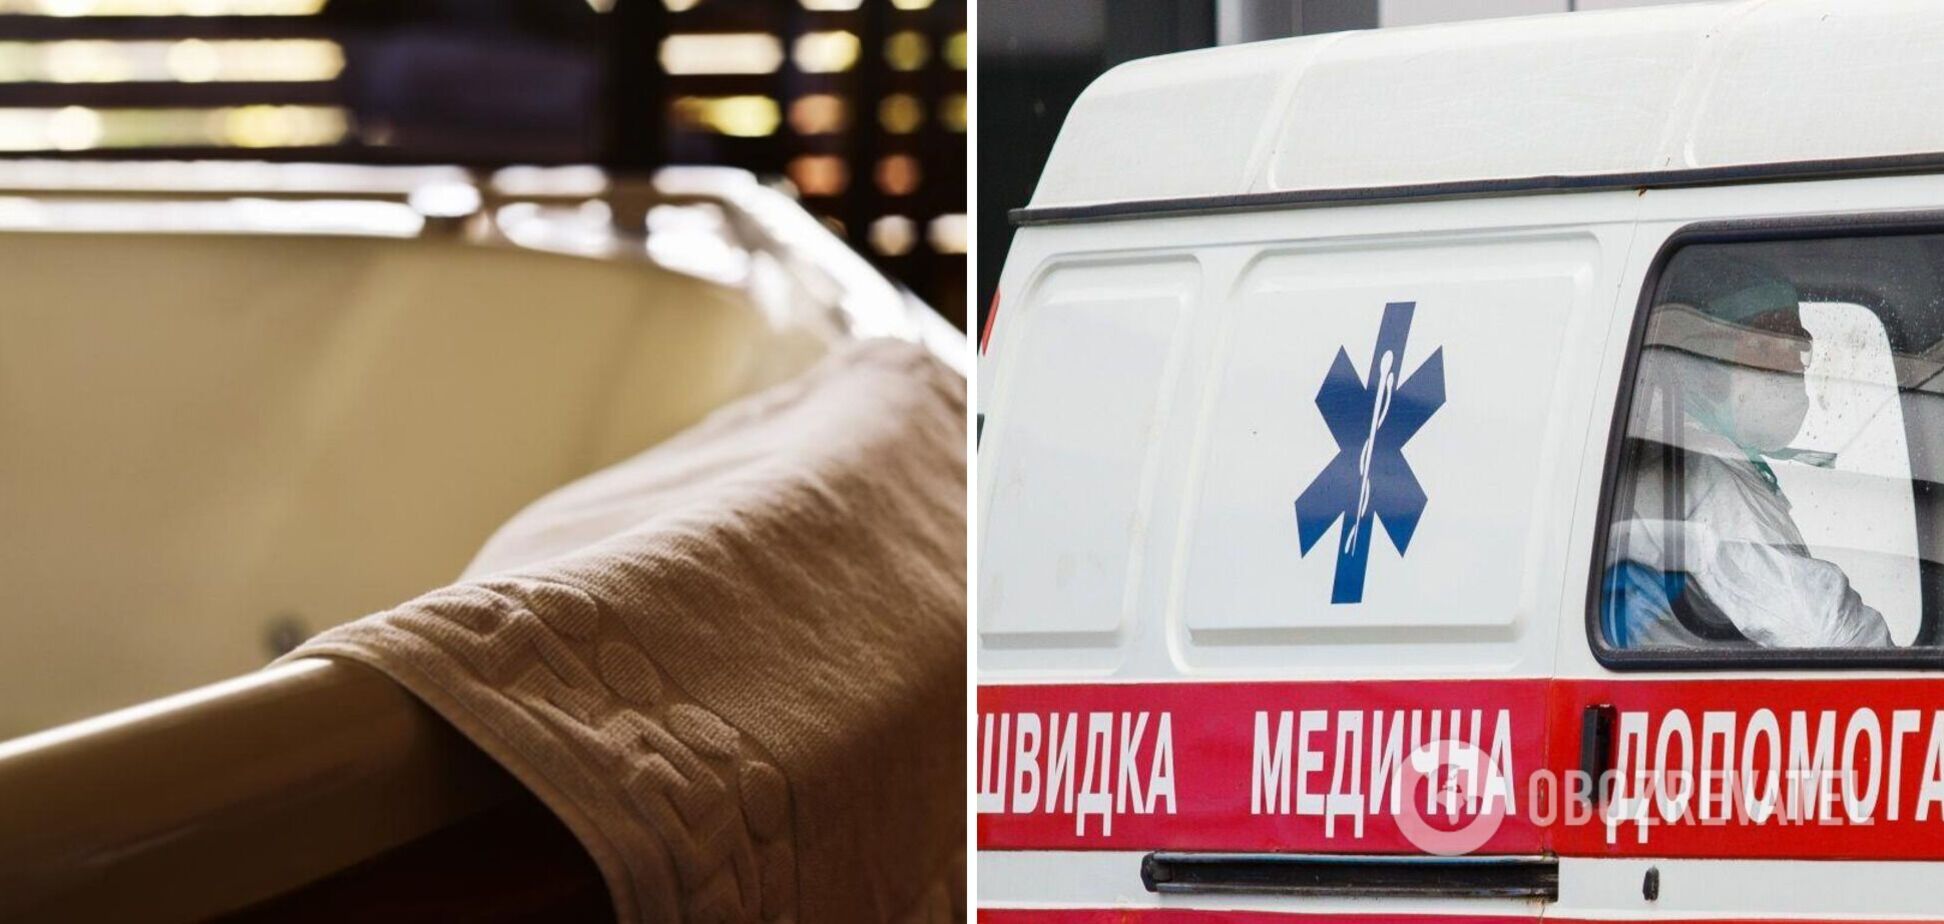 В Луцке от удара током в ванной погибла 21-летняя девушка: выяснились детали трагедии